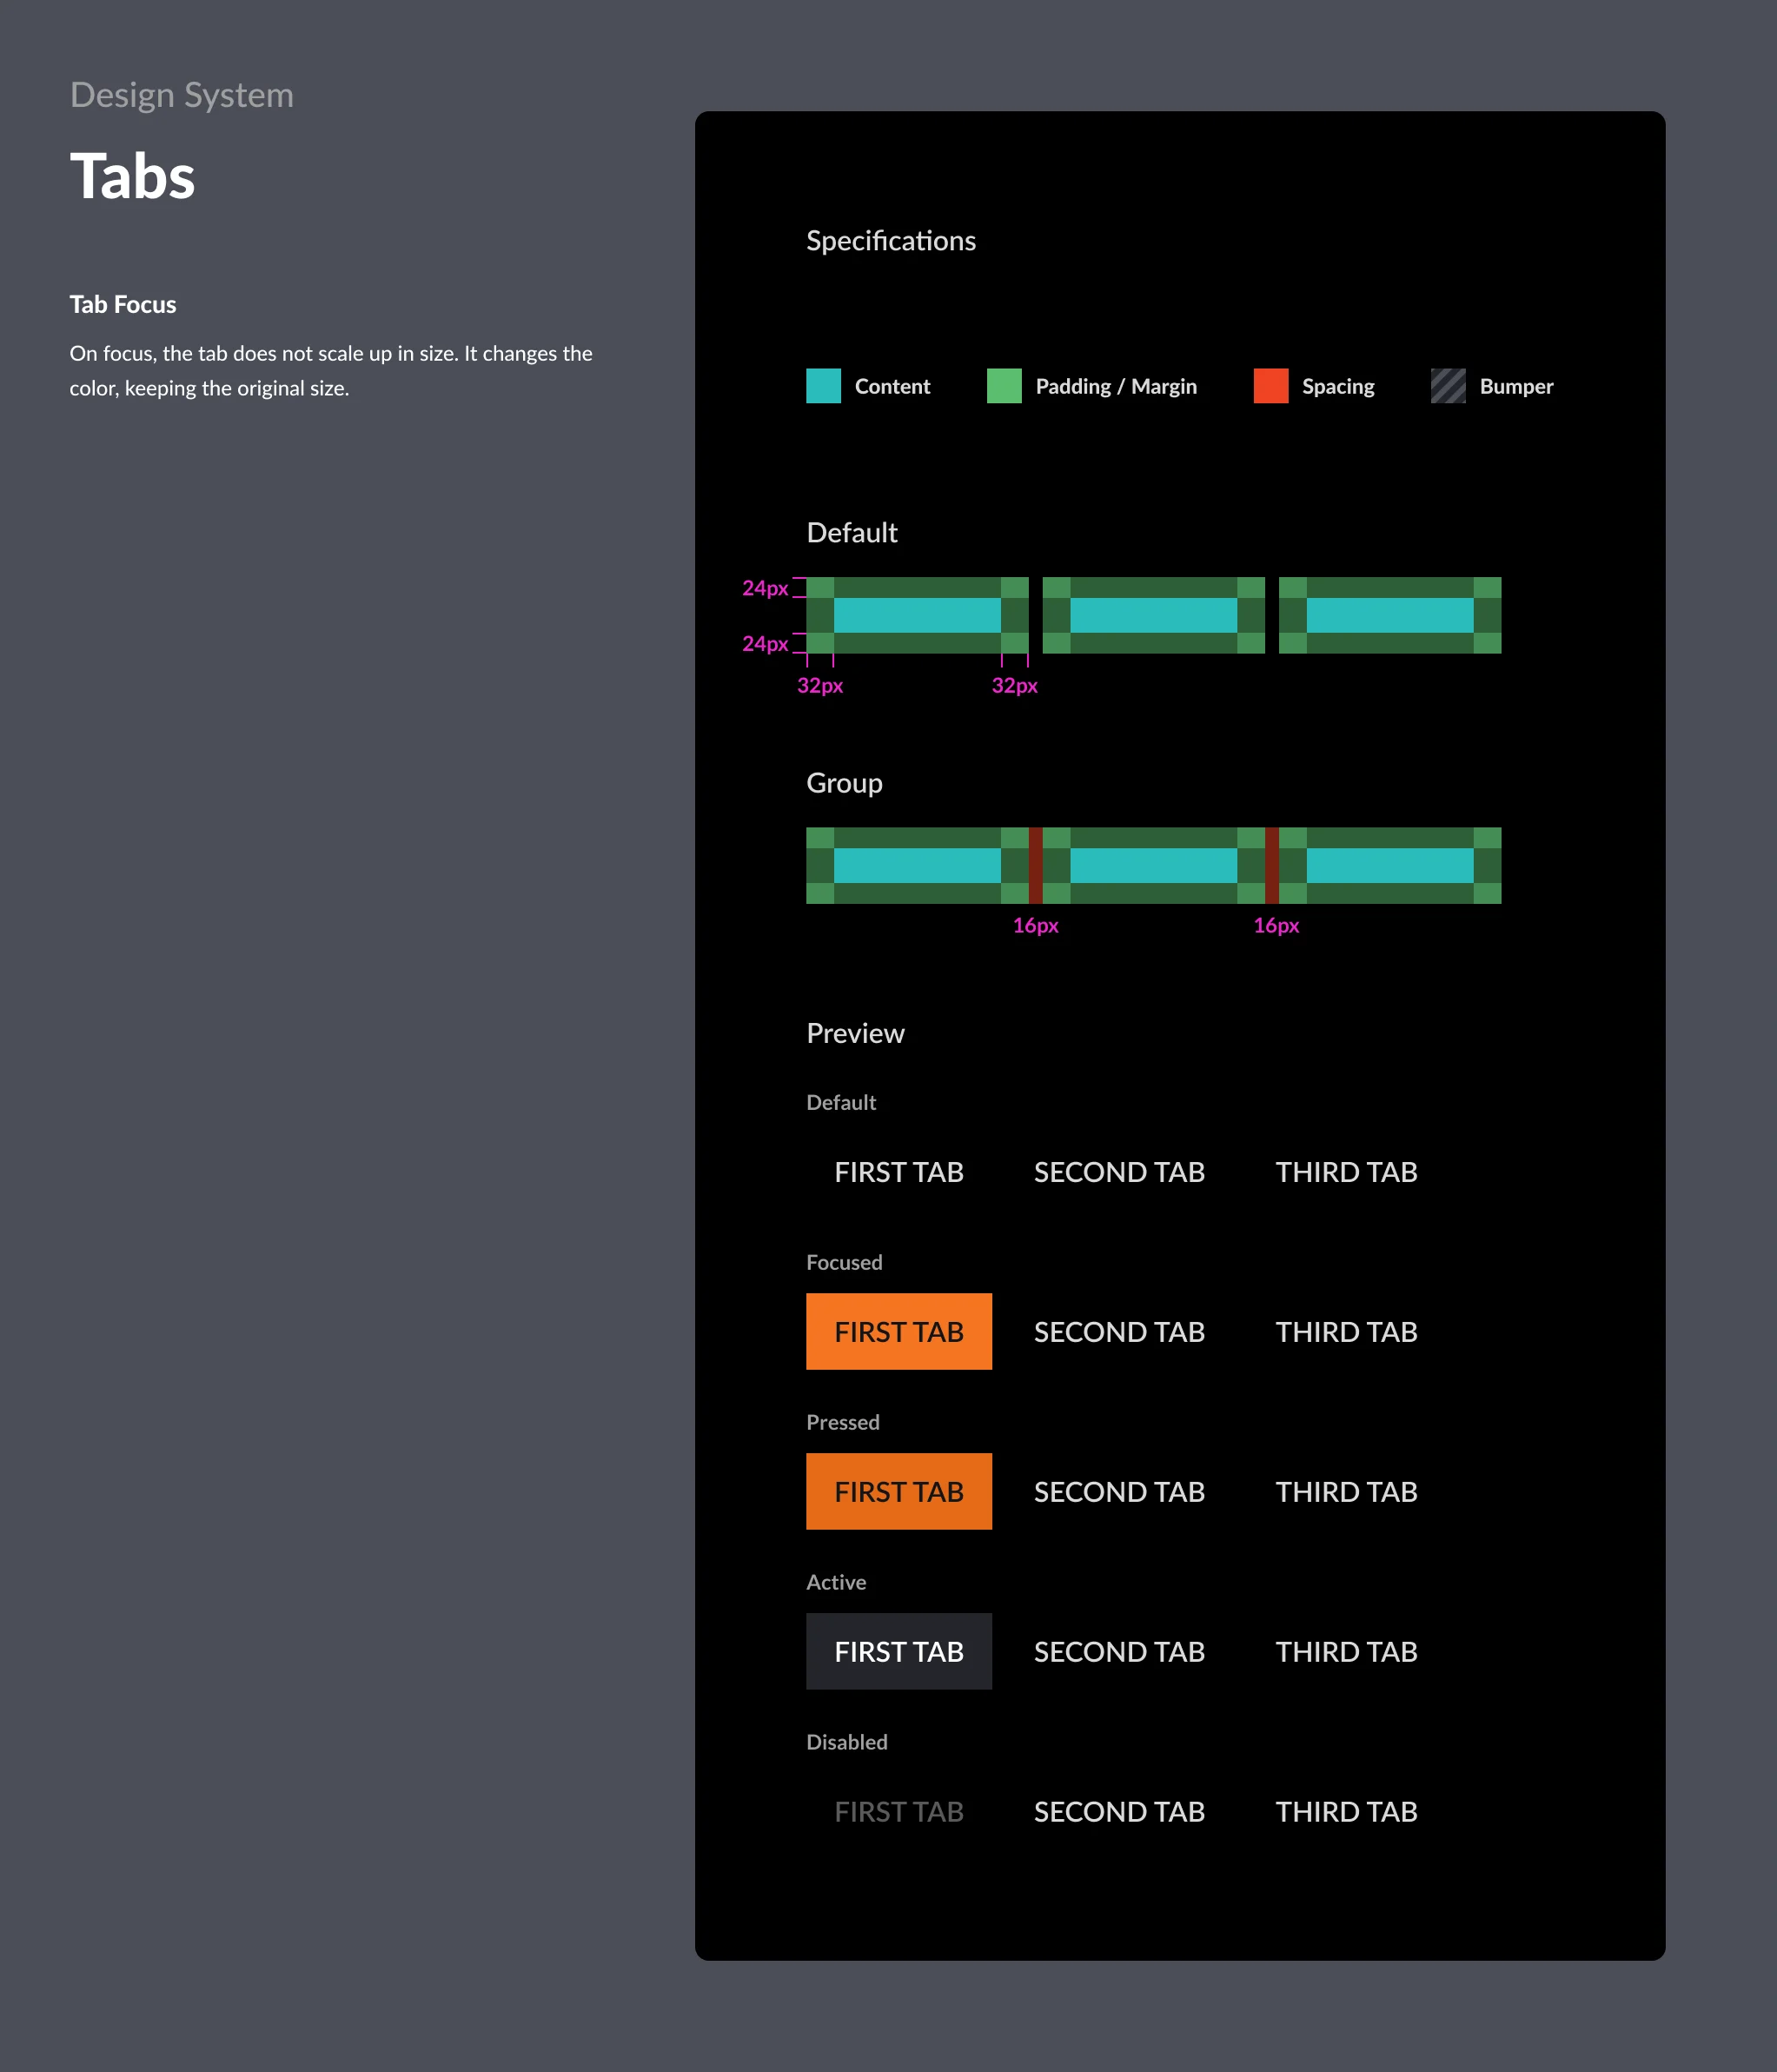 Tabs-_-Design-System